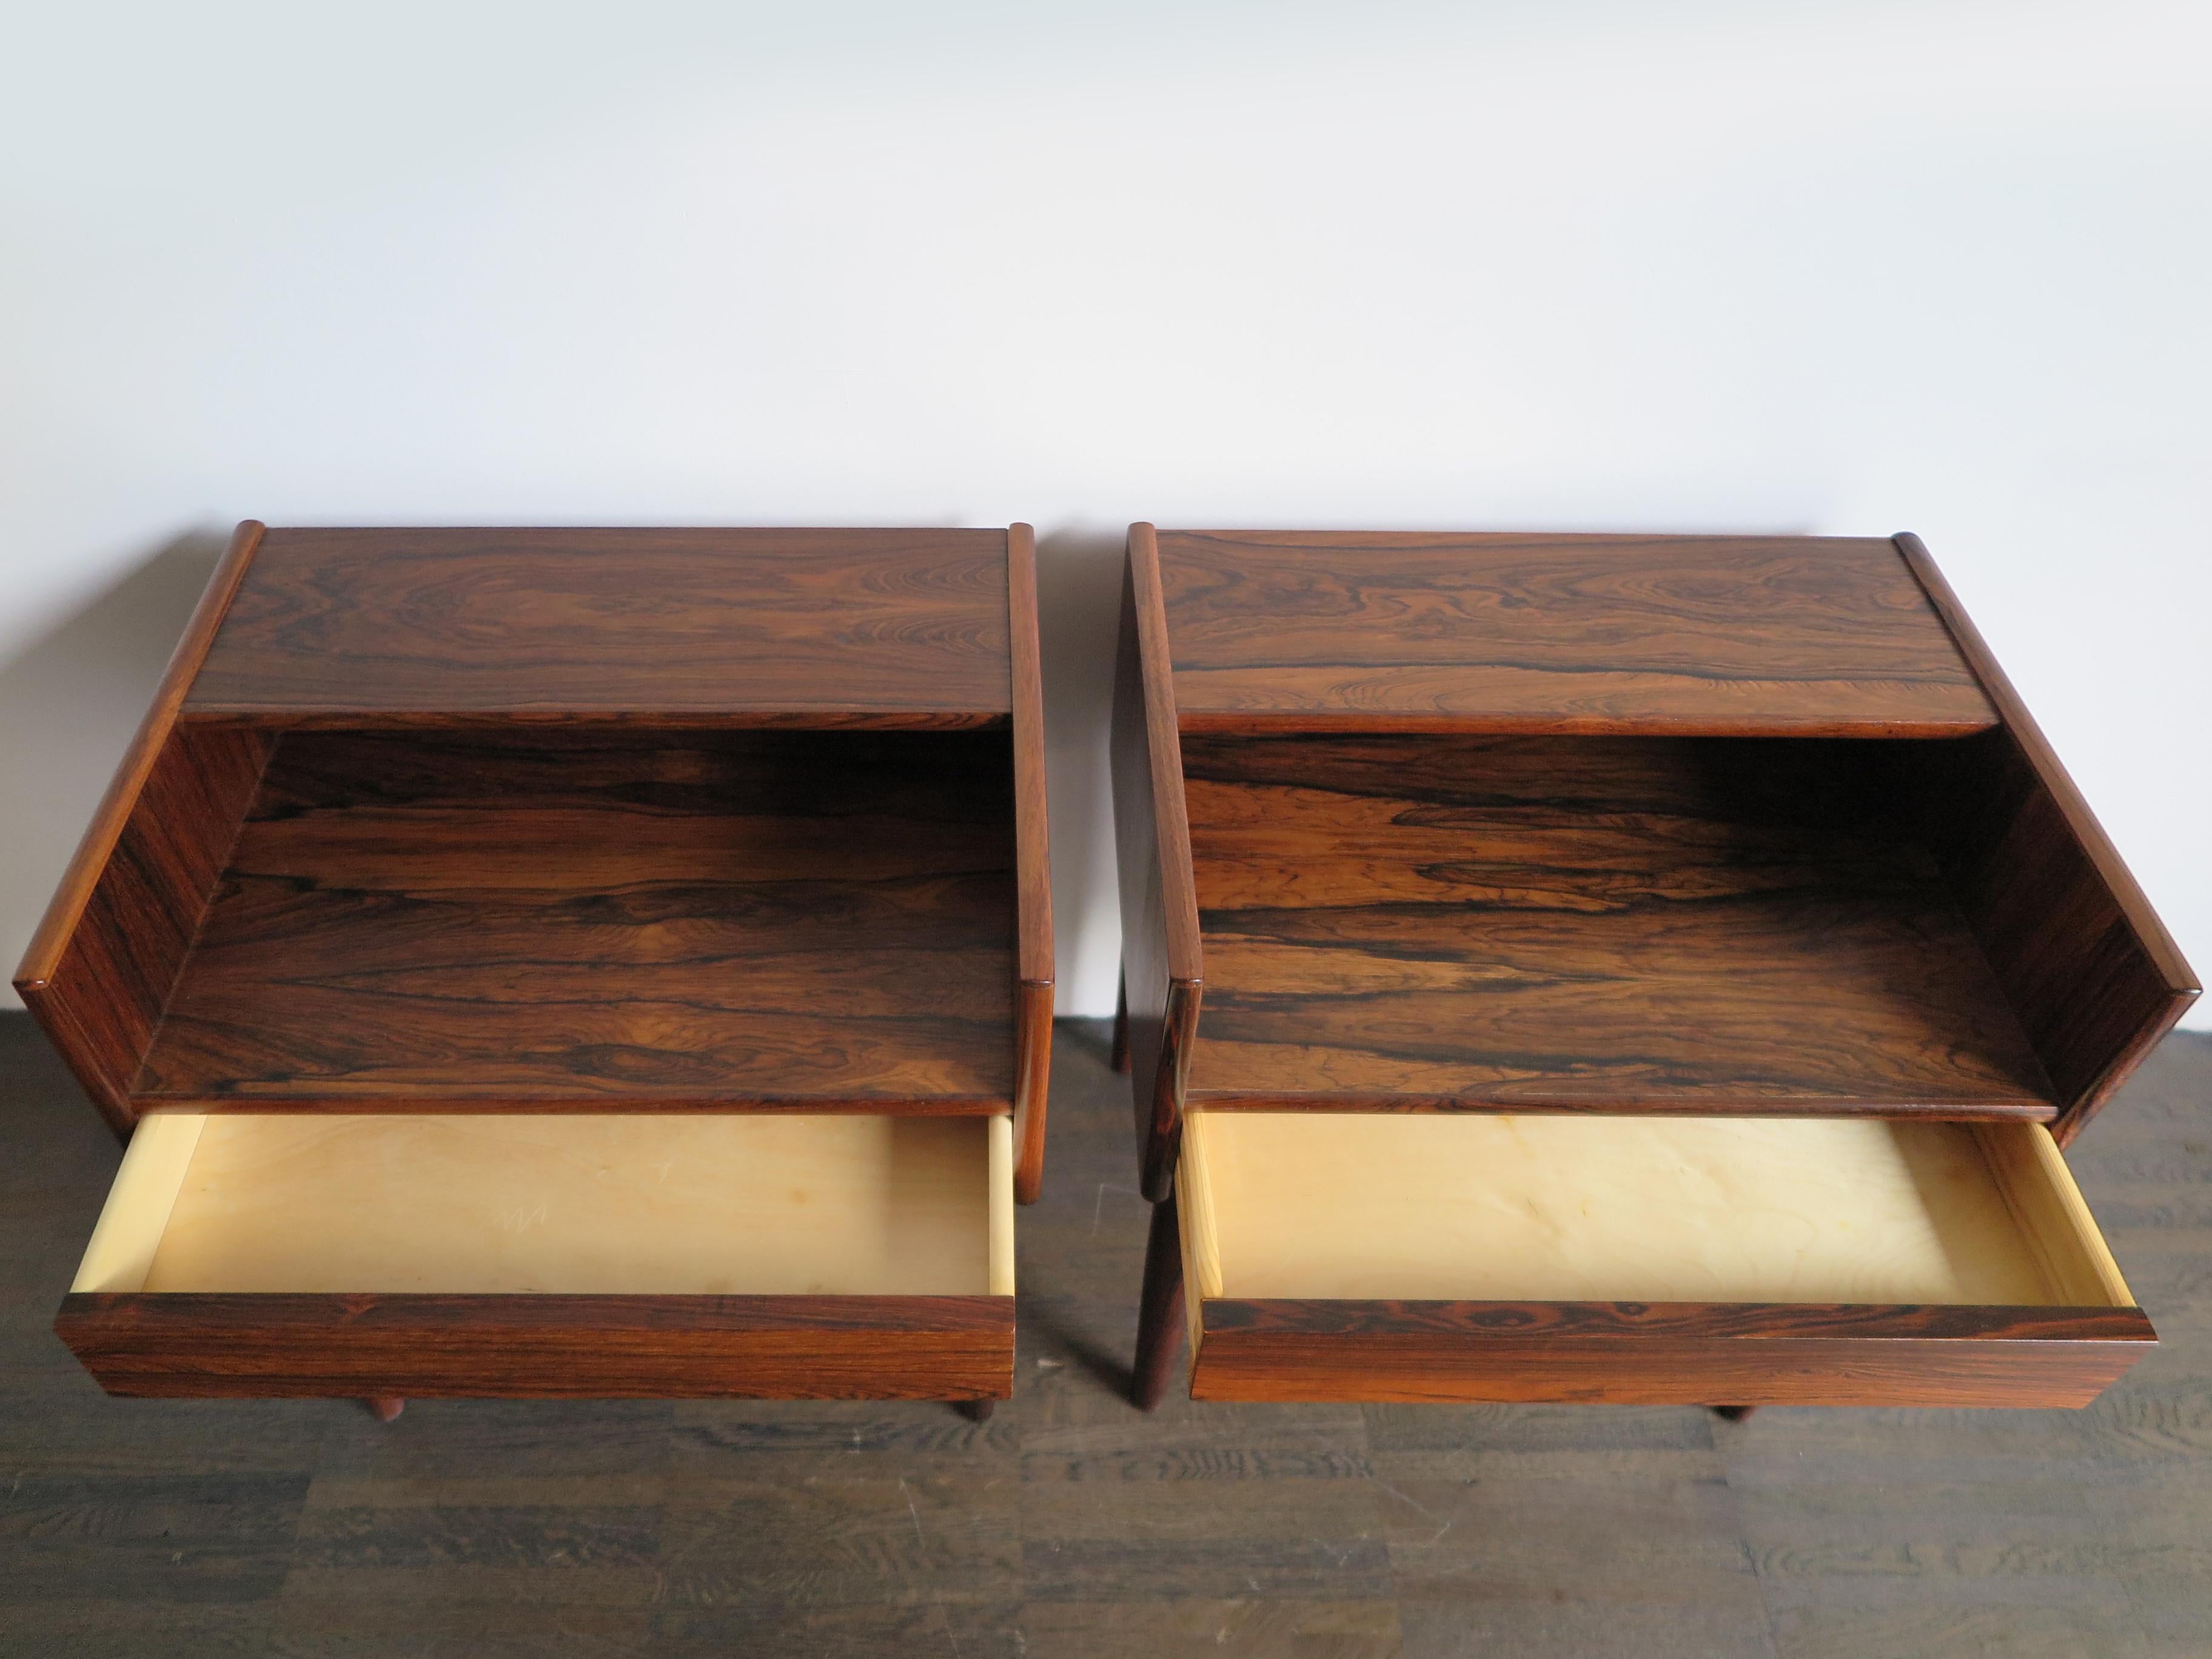 Melvin Mikkelsen Scandinavian Dark Wood Bedside Tables for Haslev Møbler 1960s  In Good Condition In Reggio Emilia, IT